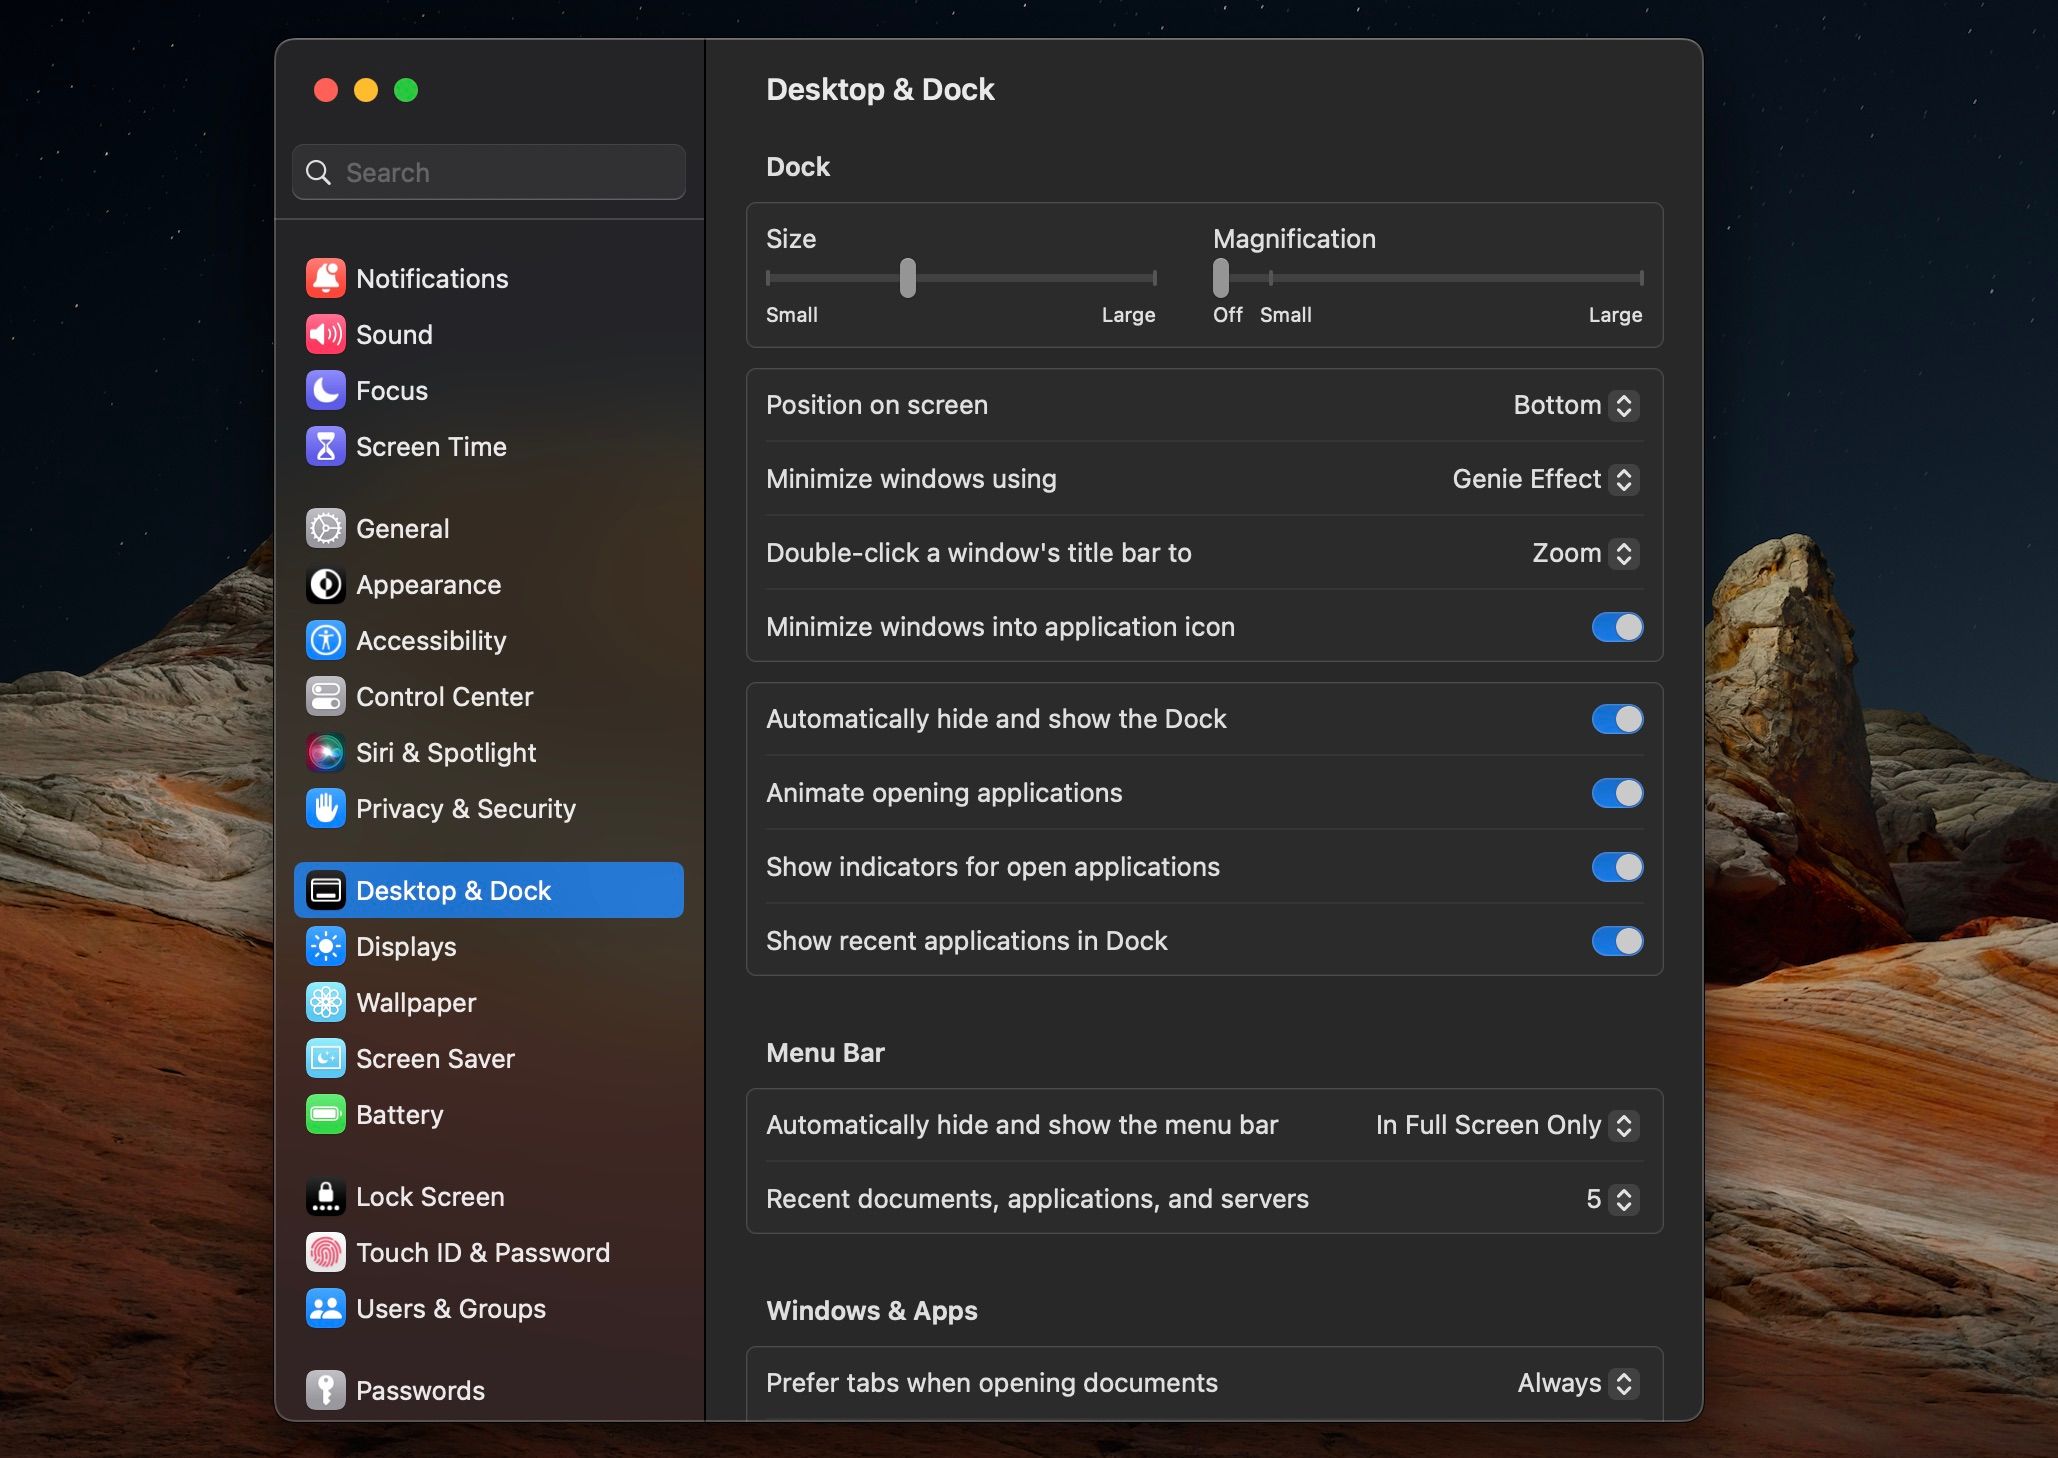 macOS Dock Settings Customization Menu